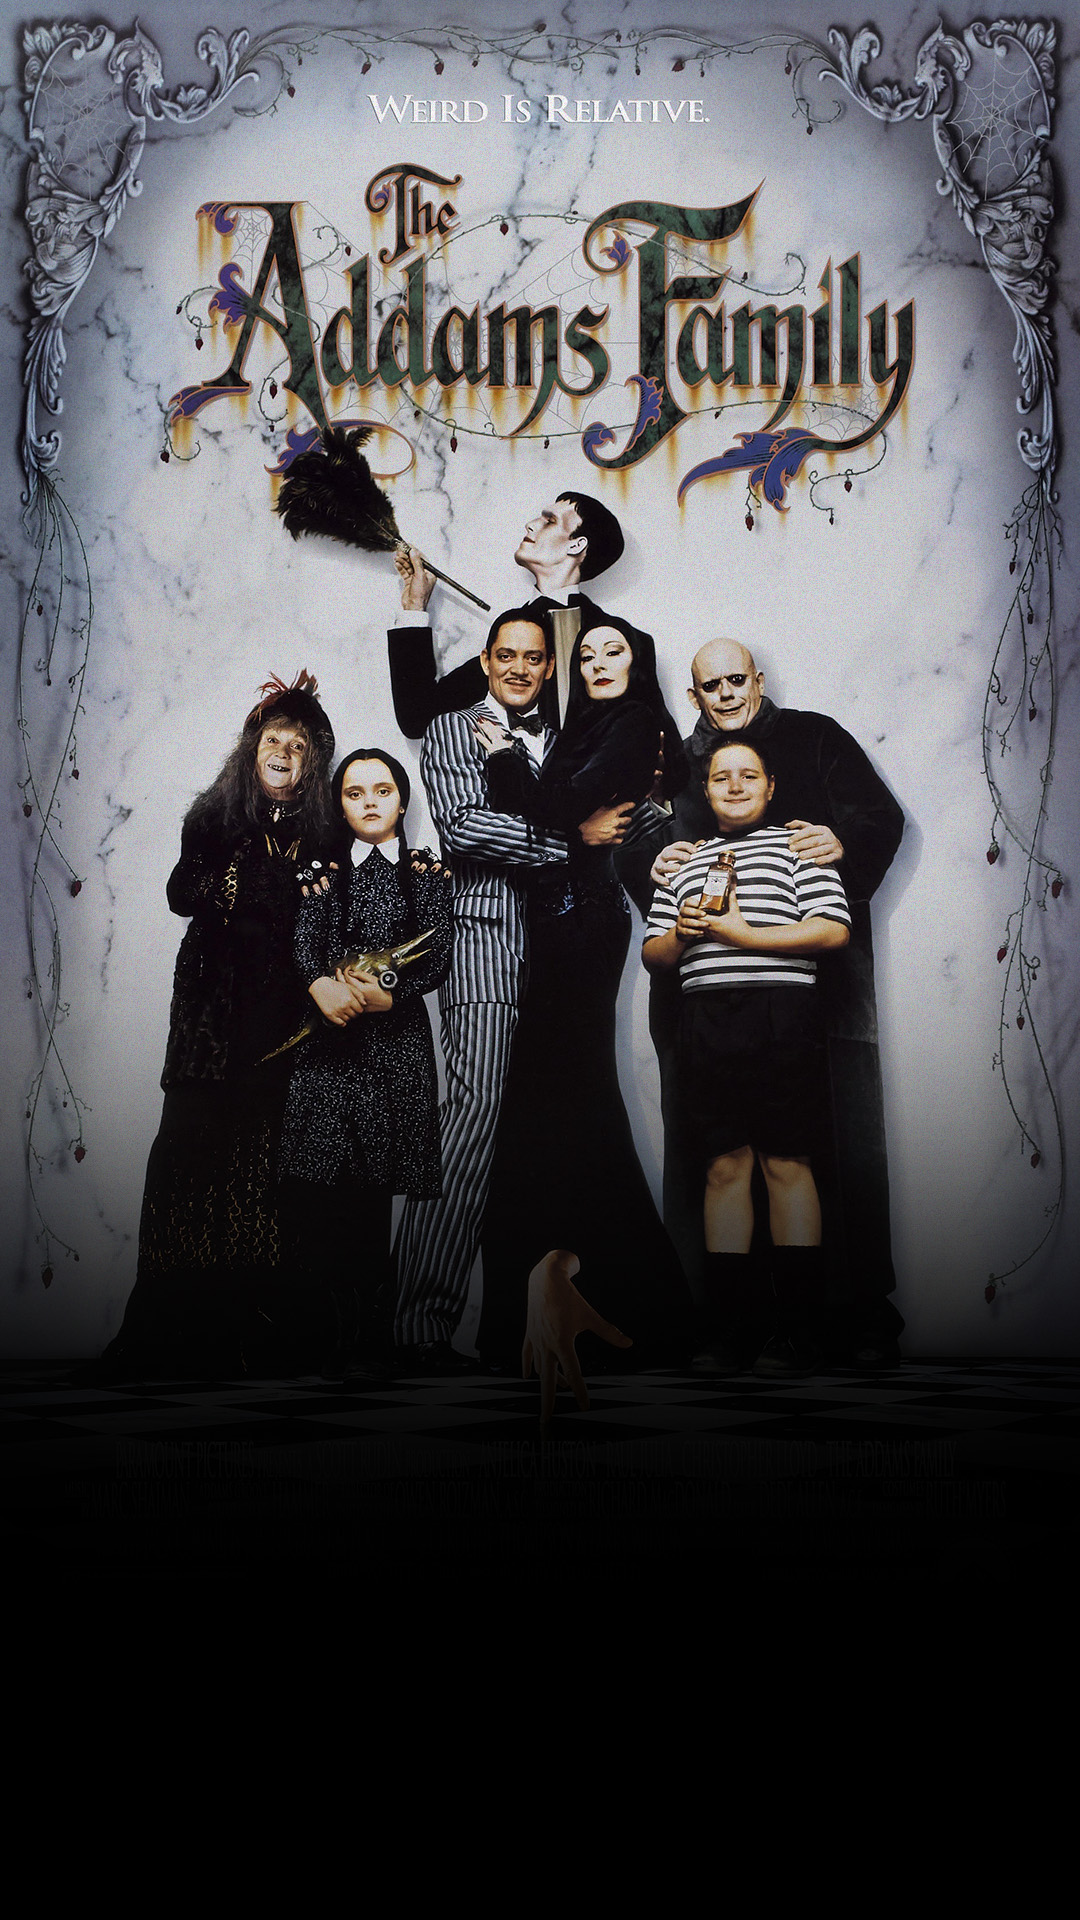 A Família Addams  Os Filmes, Personagens e Curiosidades